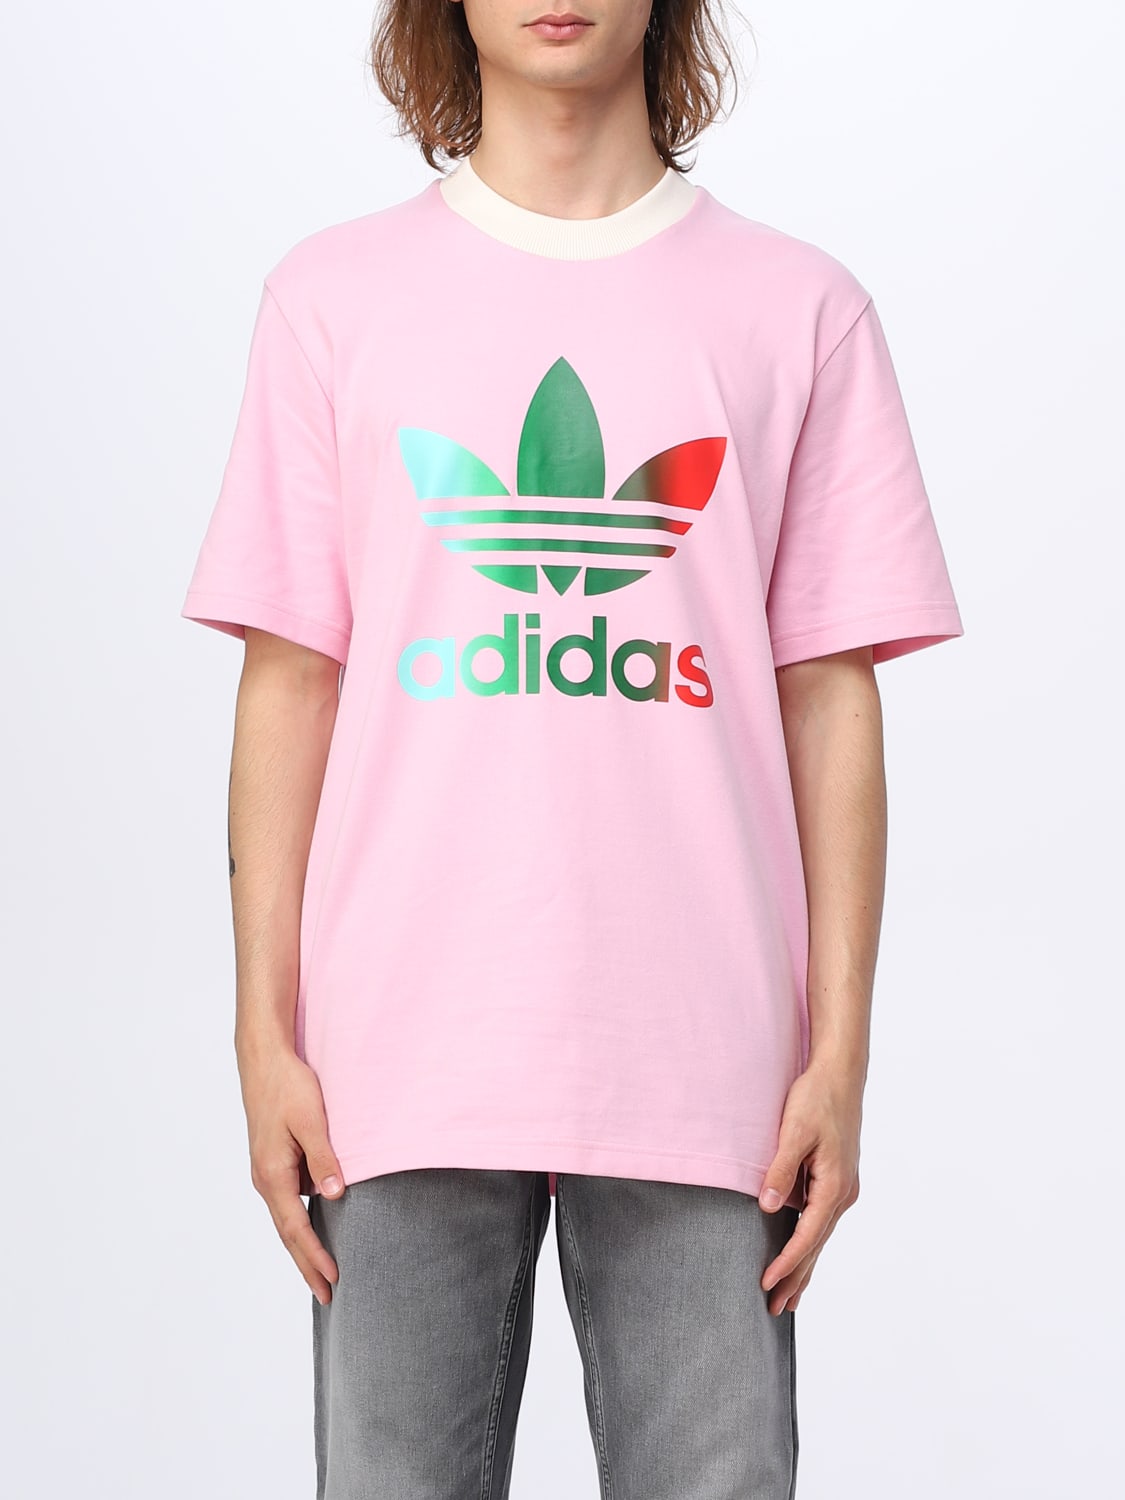 ADIDAS ORIGINALS: T-shirt homme - Rose | T-Shirt Adidas Originals ...